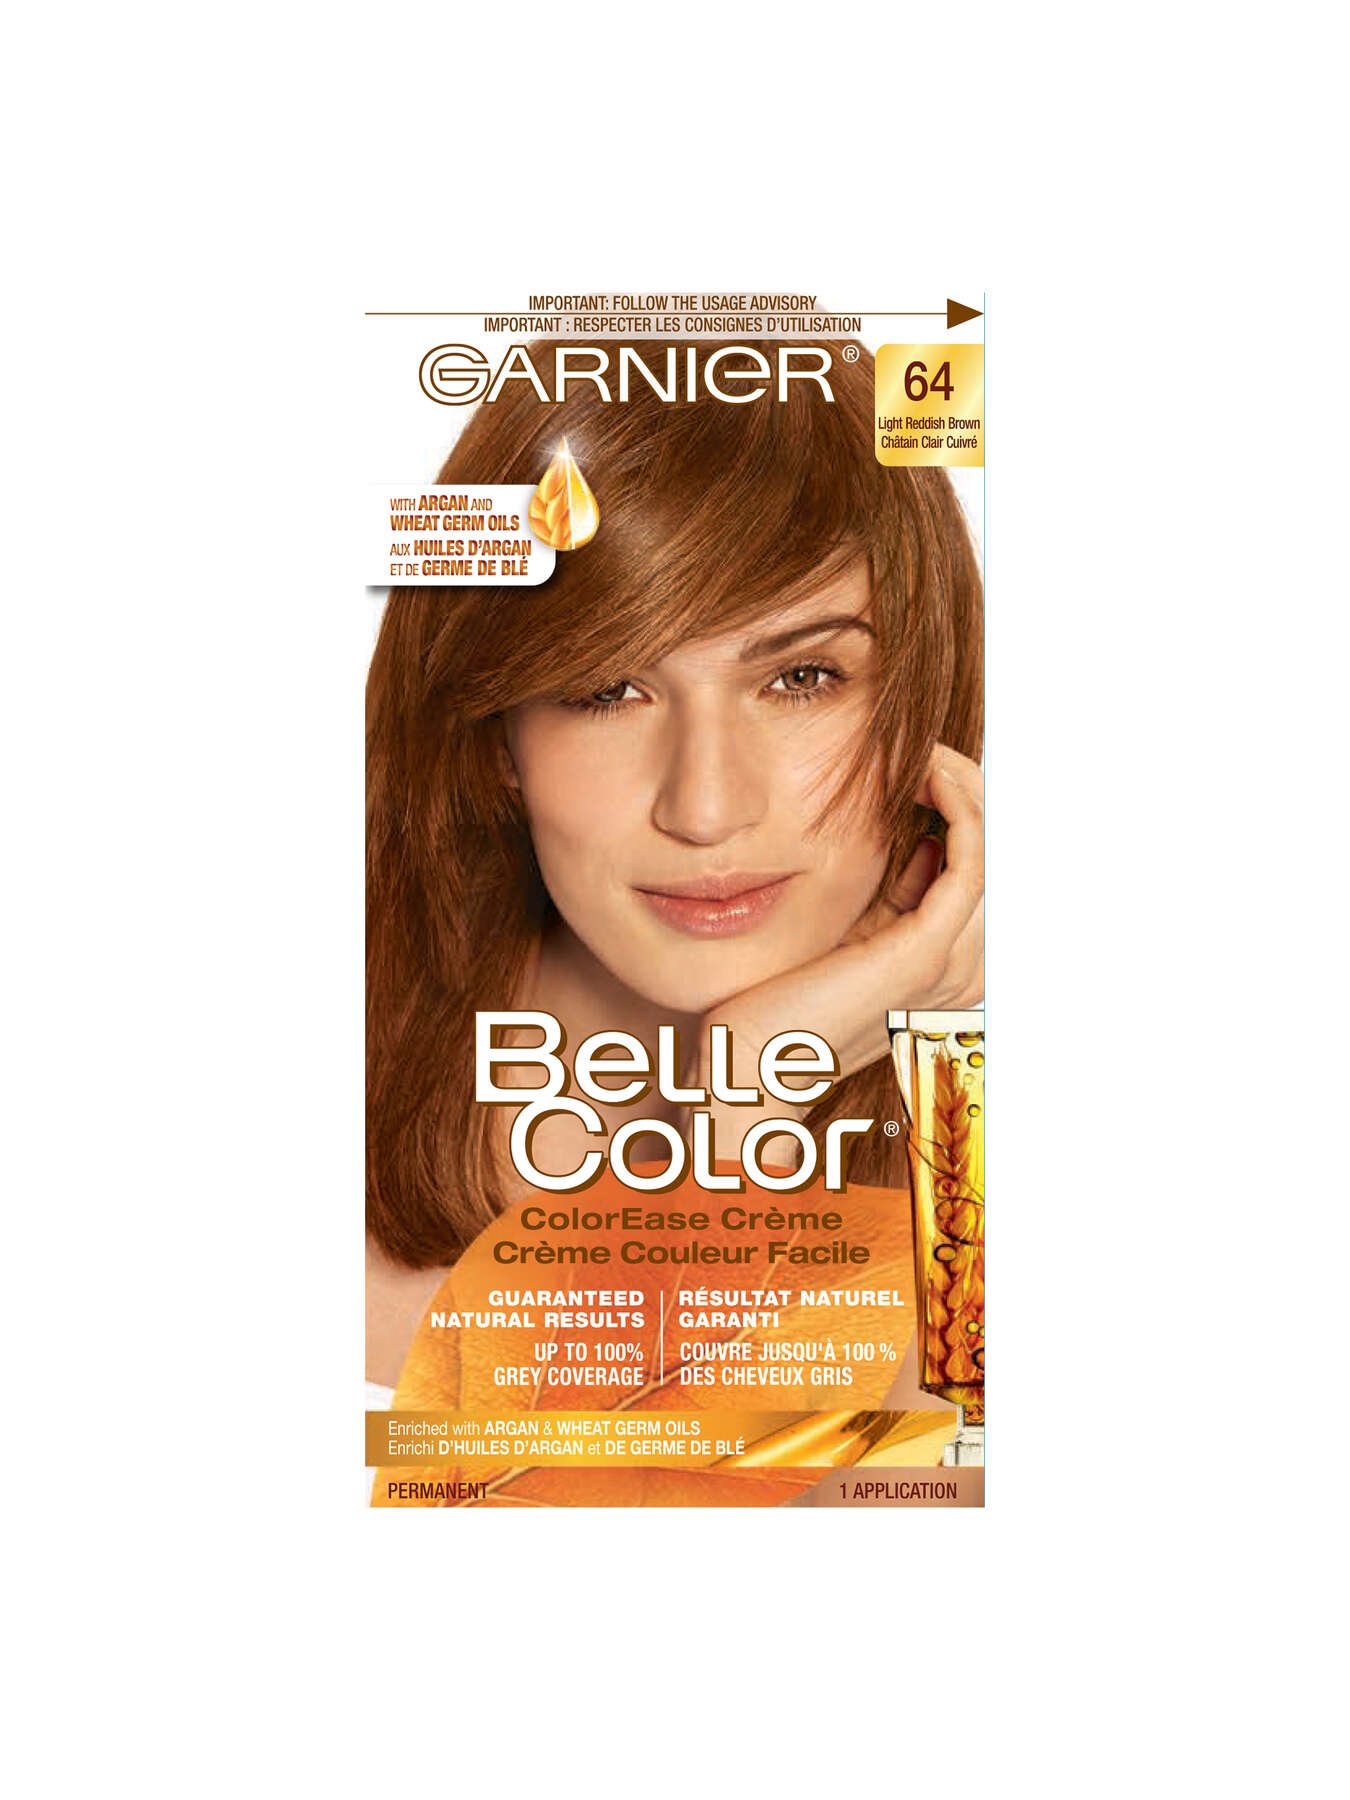 garnier hair dye belle color 64 light reddish brown 70103160253 t1